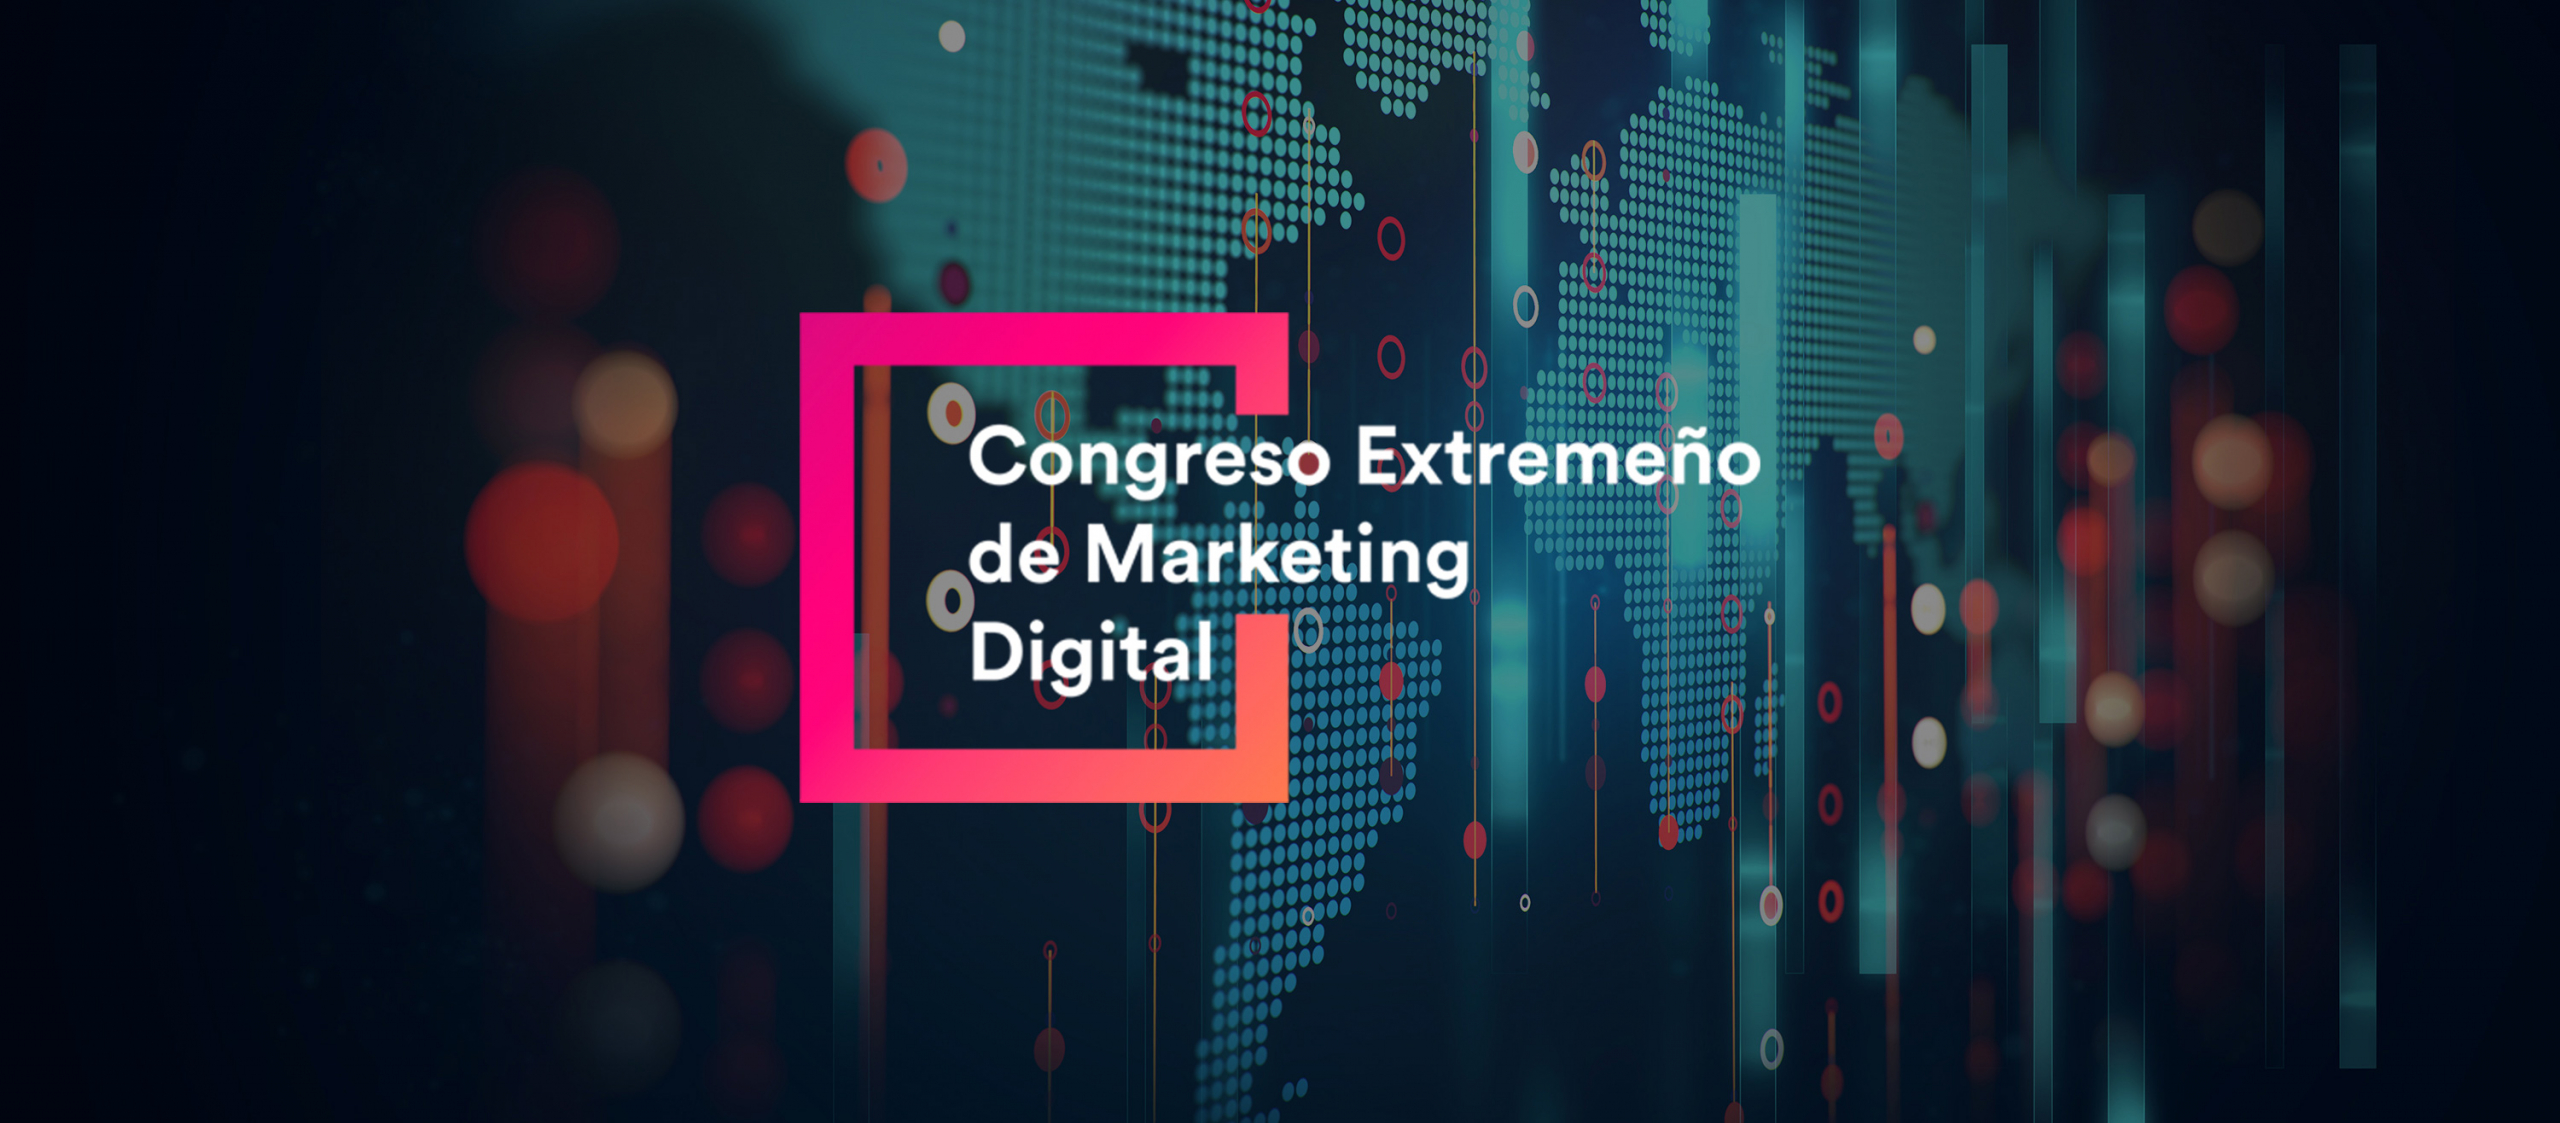 Congreso Extremeño de Marketing Digital